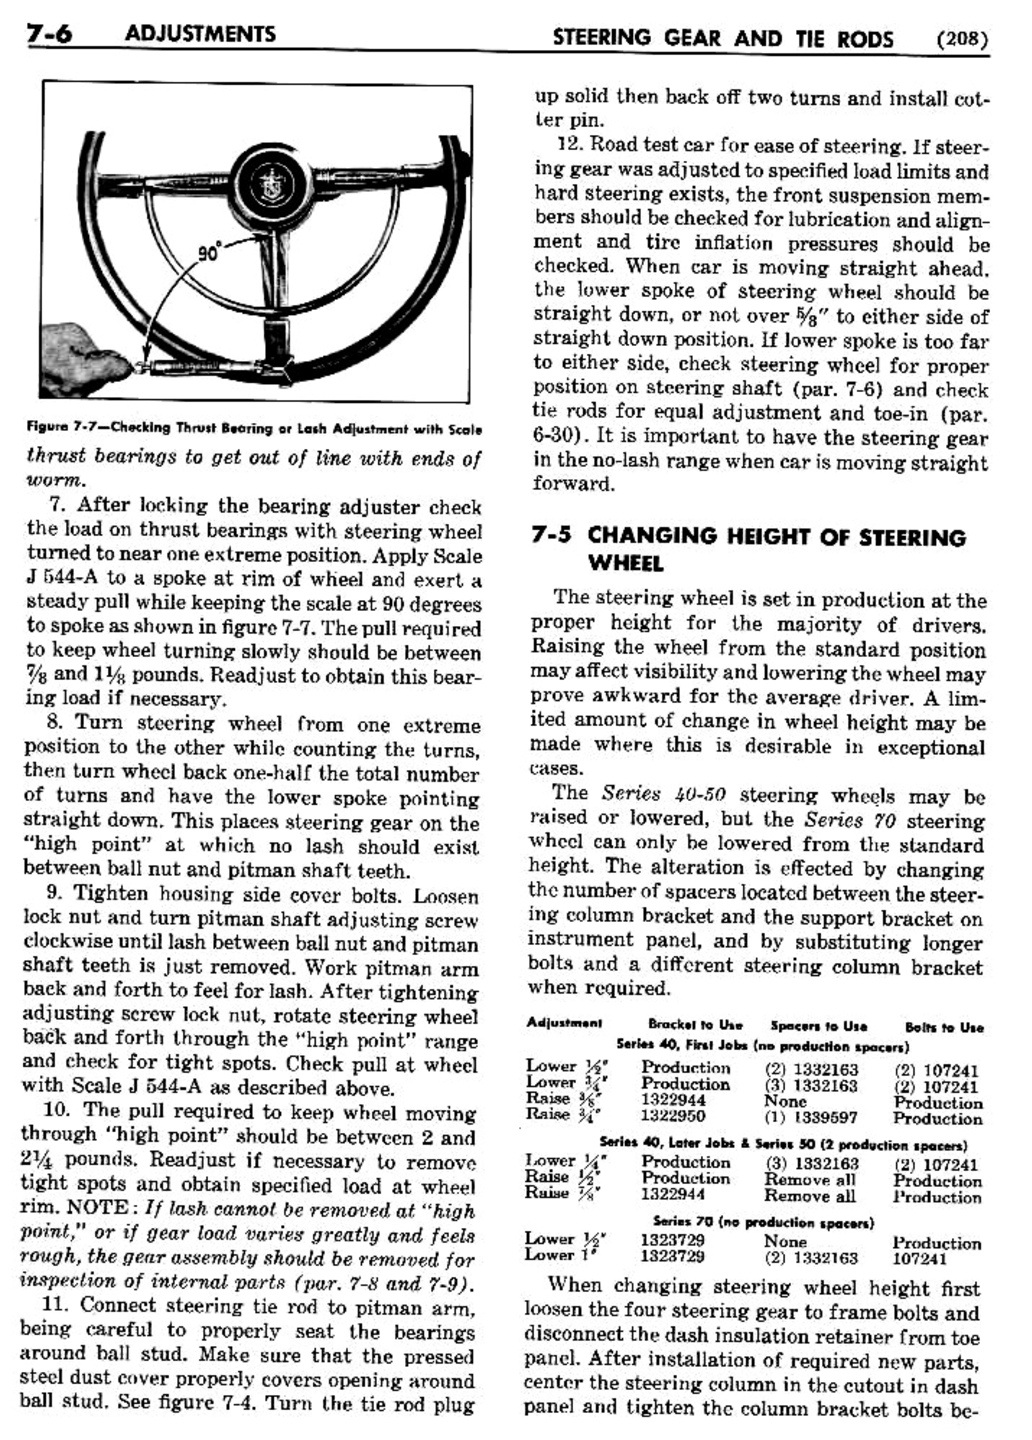 n_08 1950 Buick Shop Manual - Steering-006-006.jpg